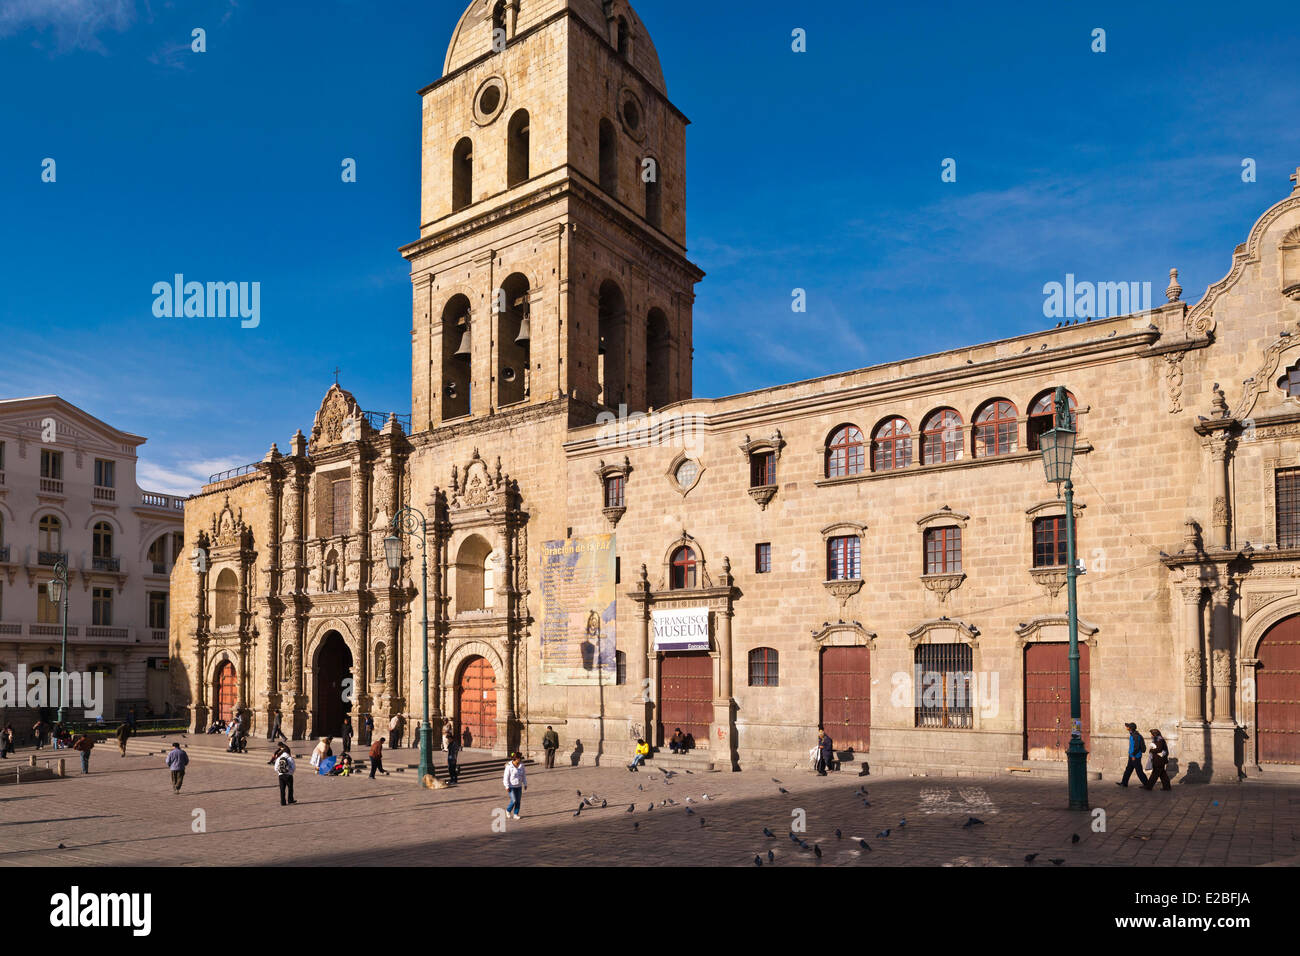 La BOLIVIE, La Paz, La Paz, San Francisco l'église Baroque du 16ème siècle Banque D'Images